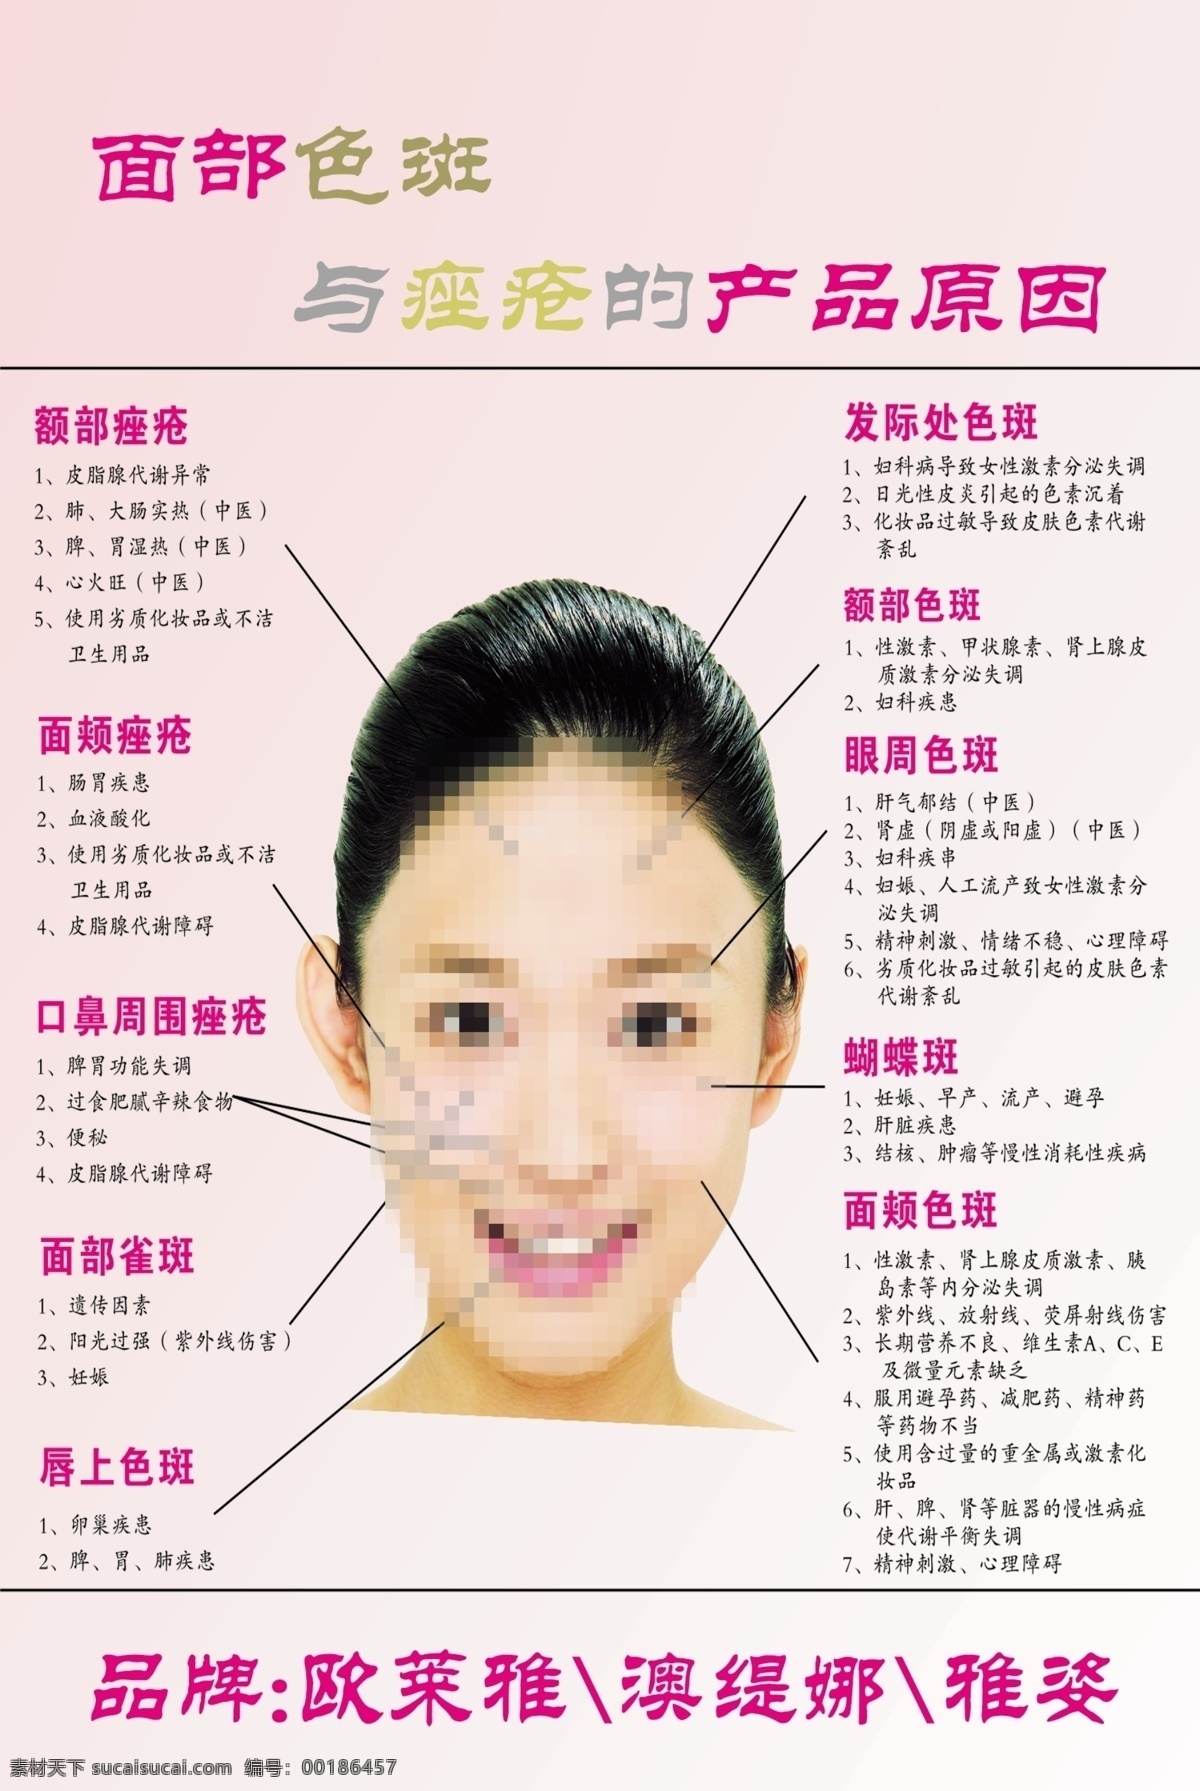 美容院 宣传海报 粉色 女子 色斑 面部 各类 产品 示意图 广告设计模板 源文件